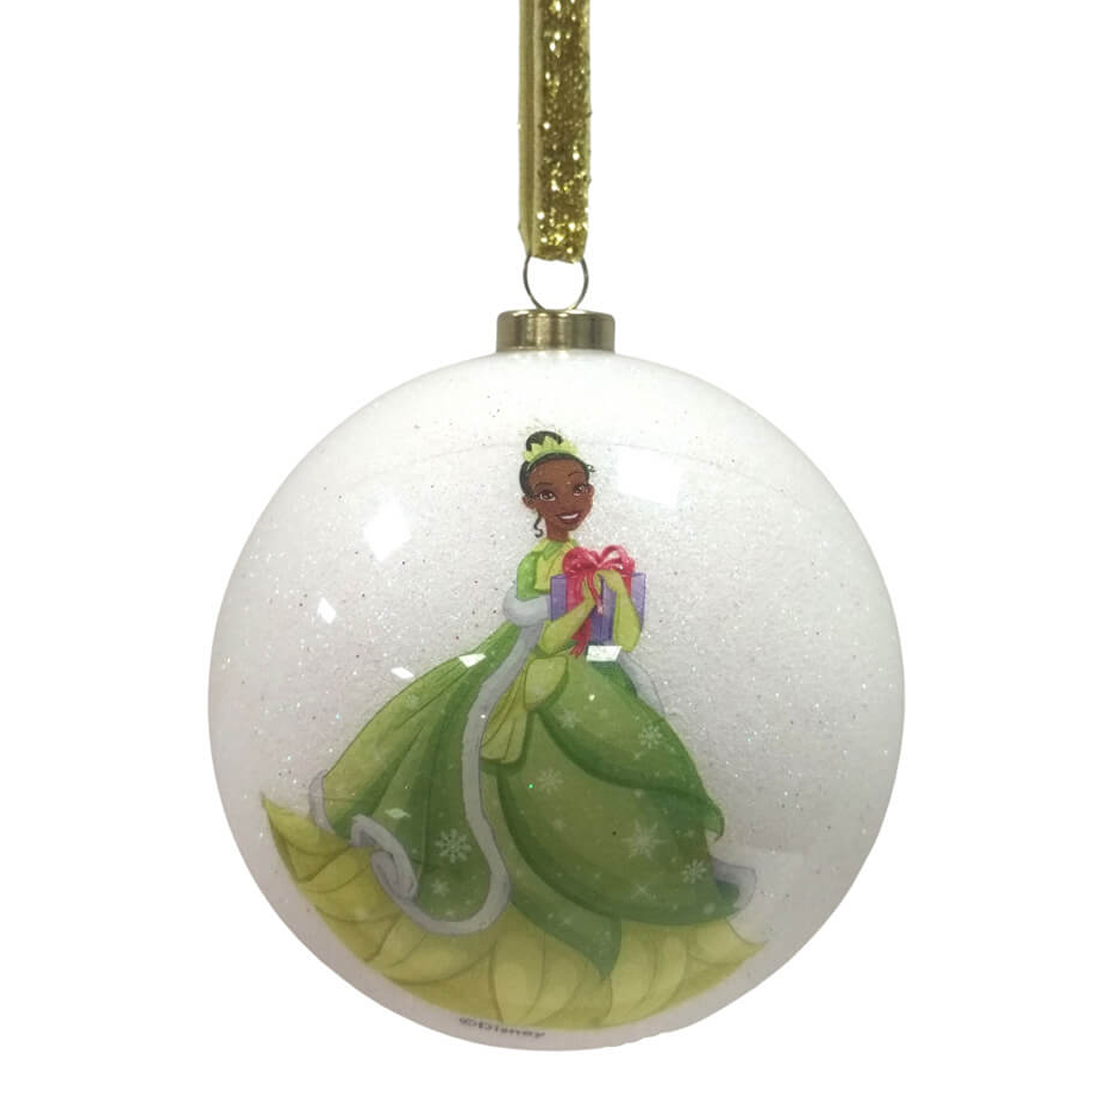 Disney Princess Christmas Baubles